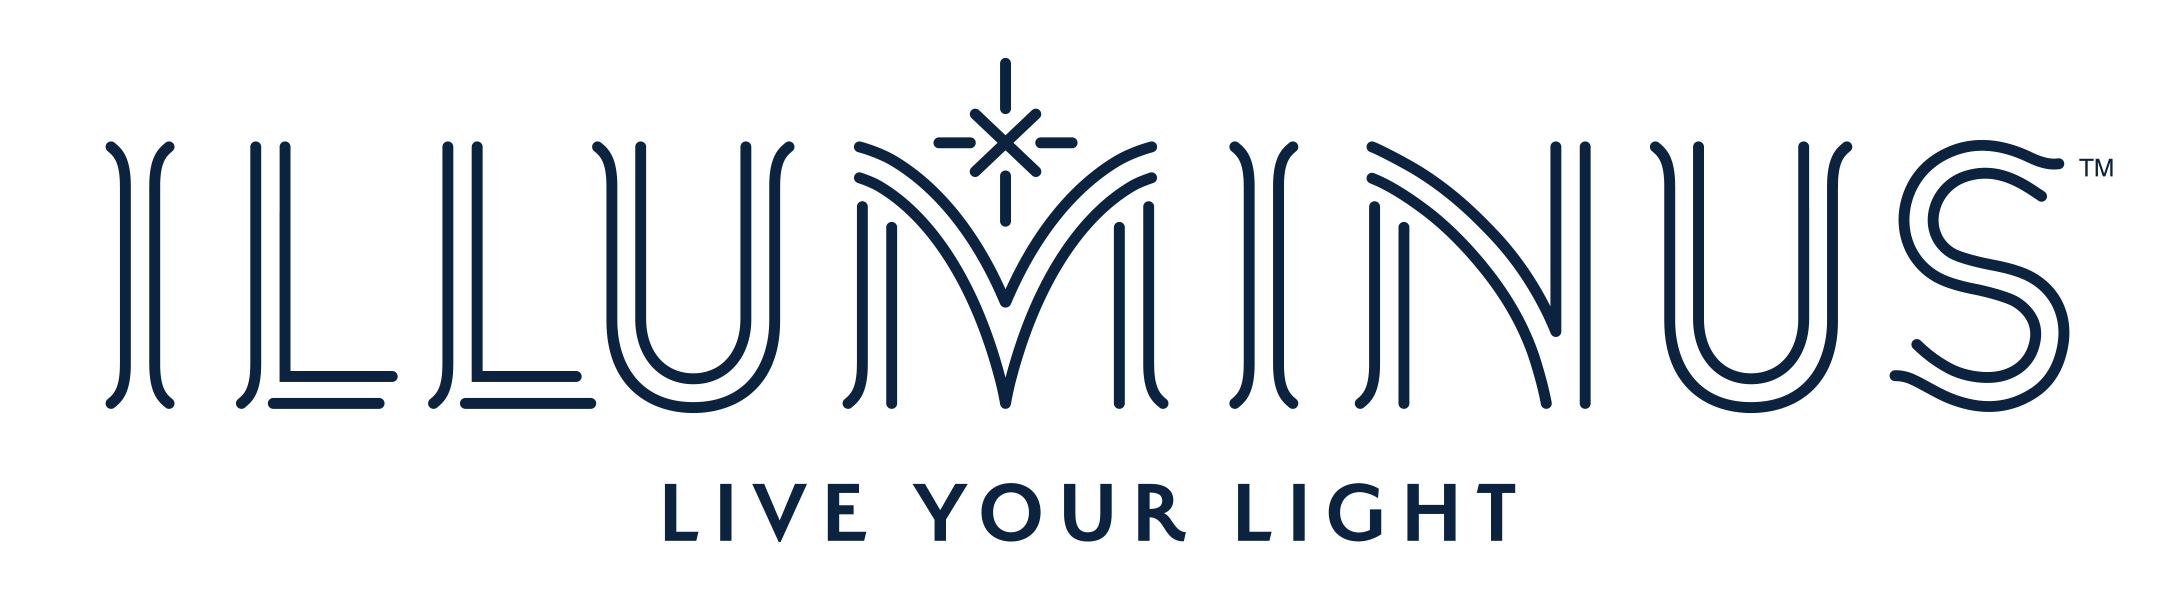 Illuminus Logo